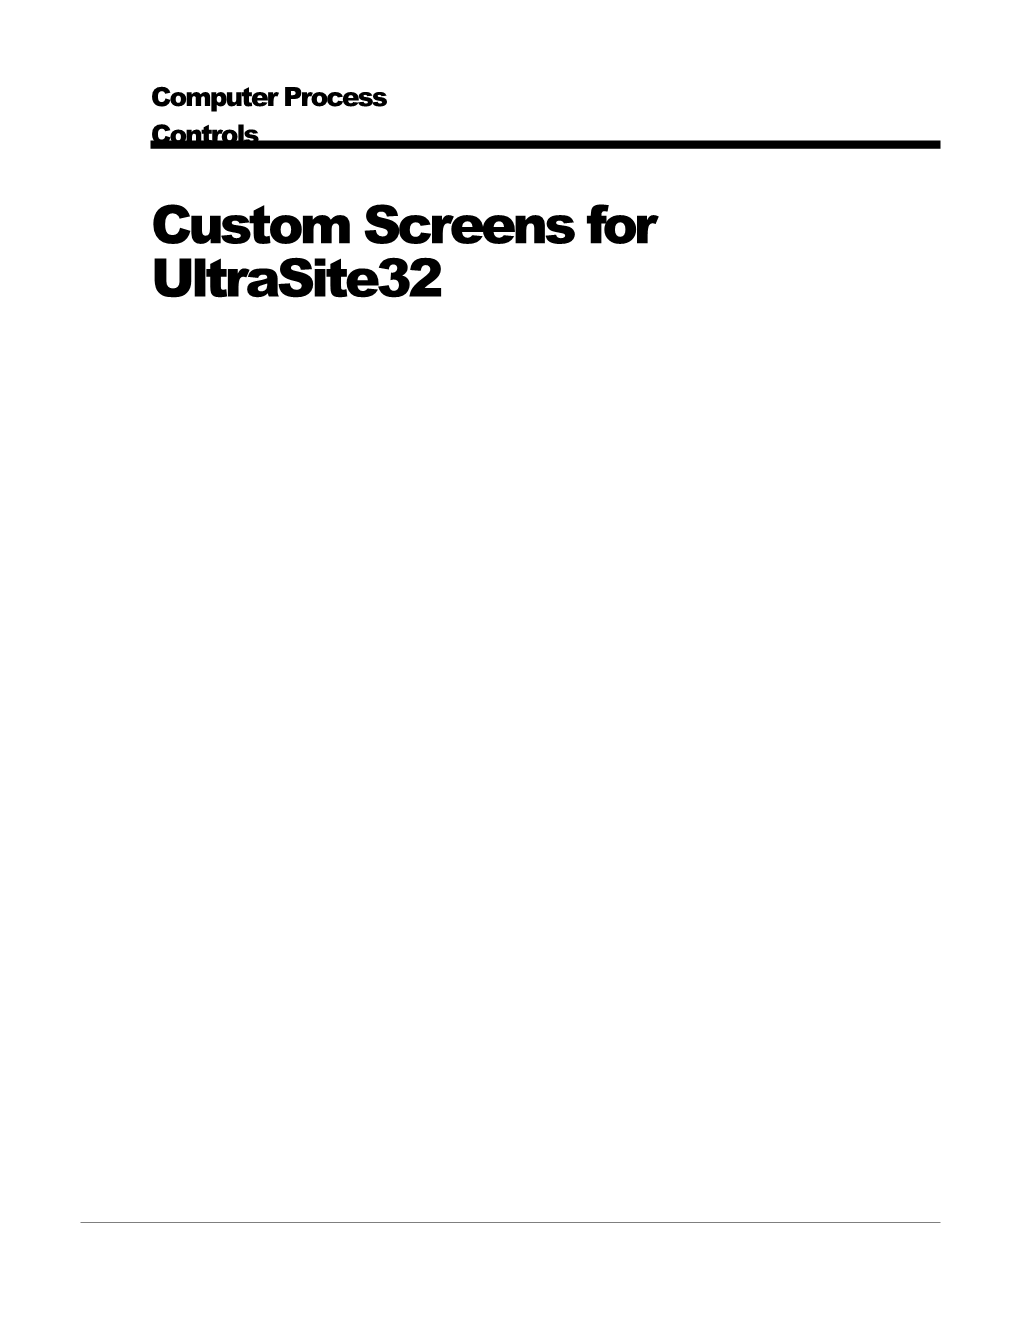 Custom Screens for Ultrasite32